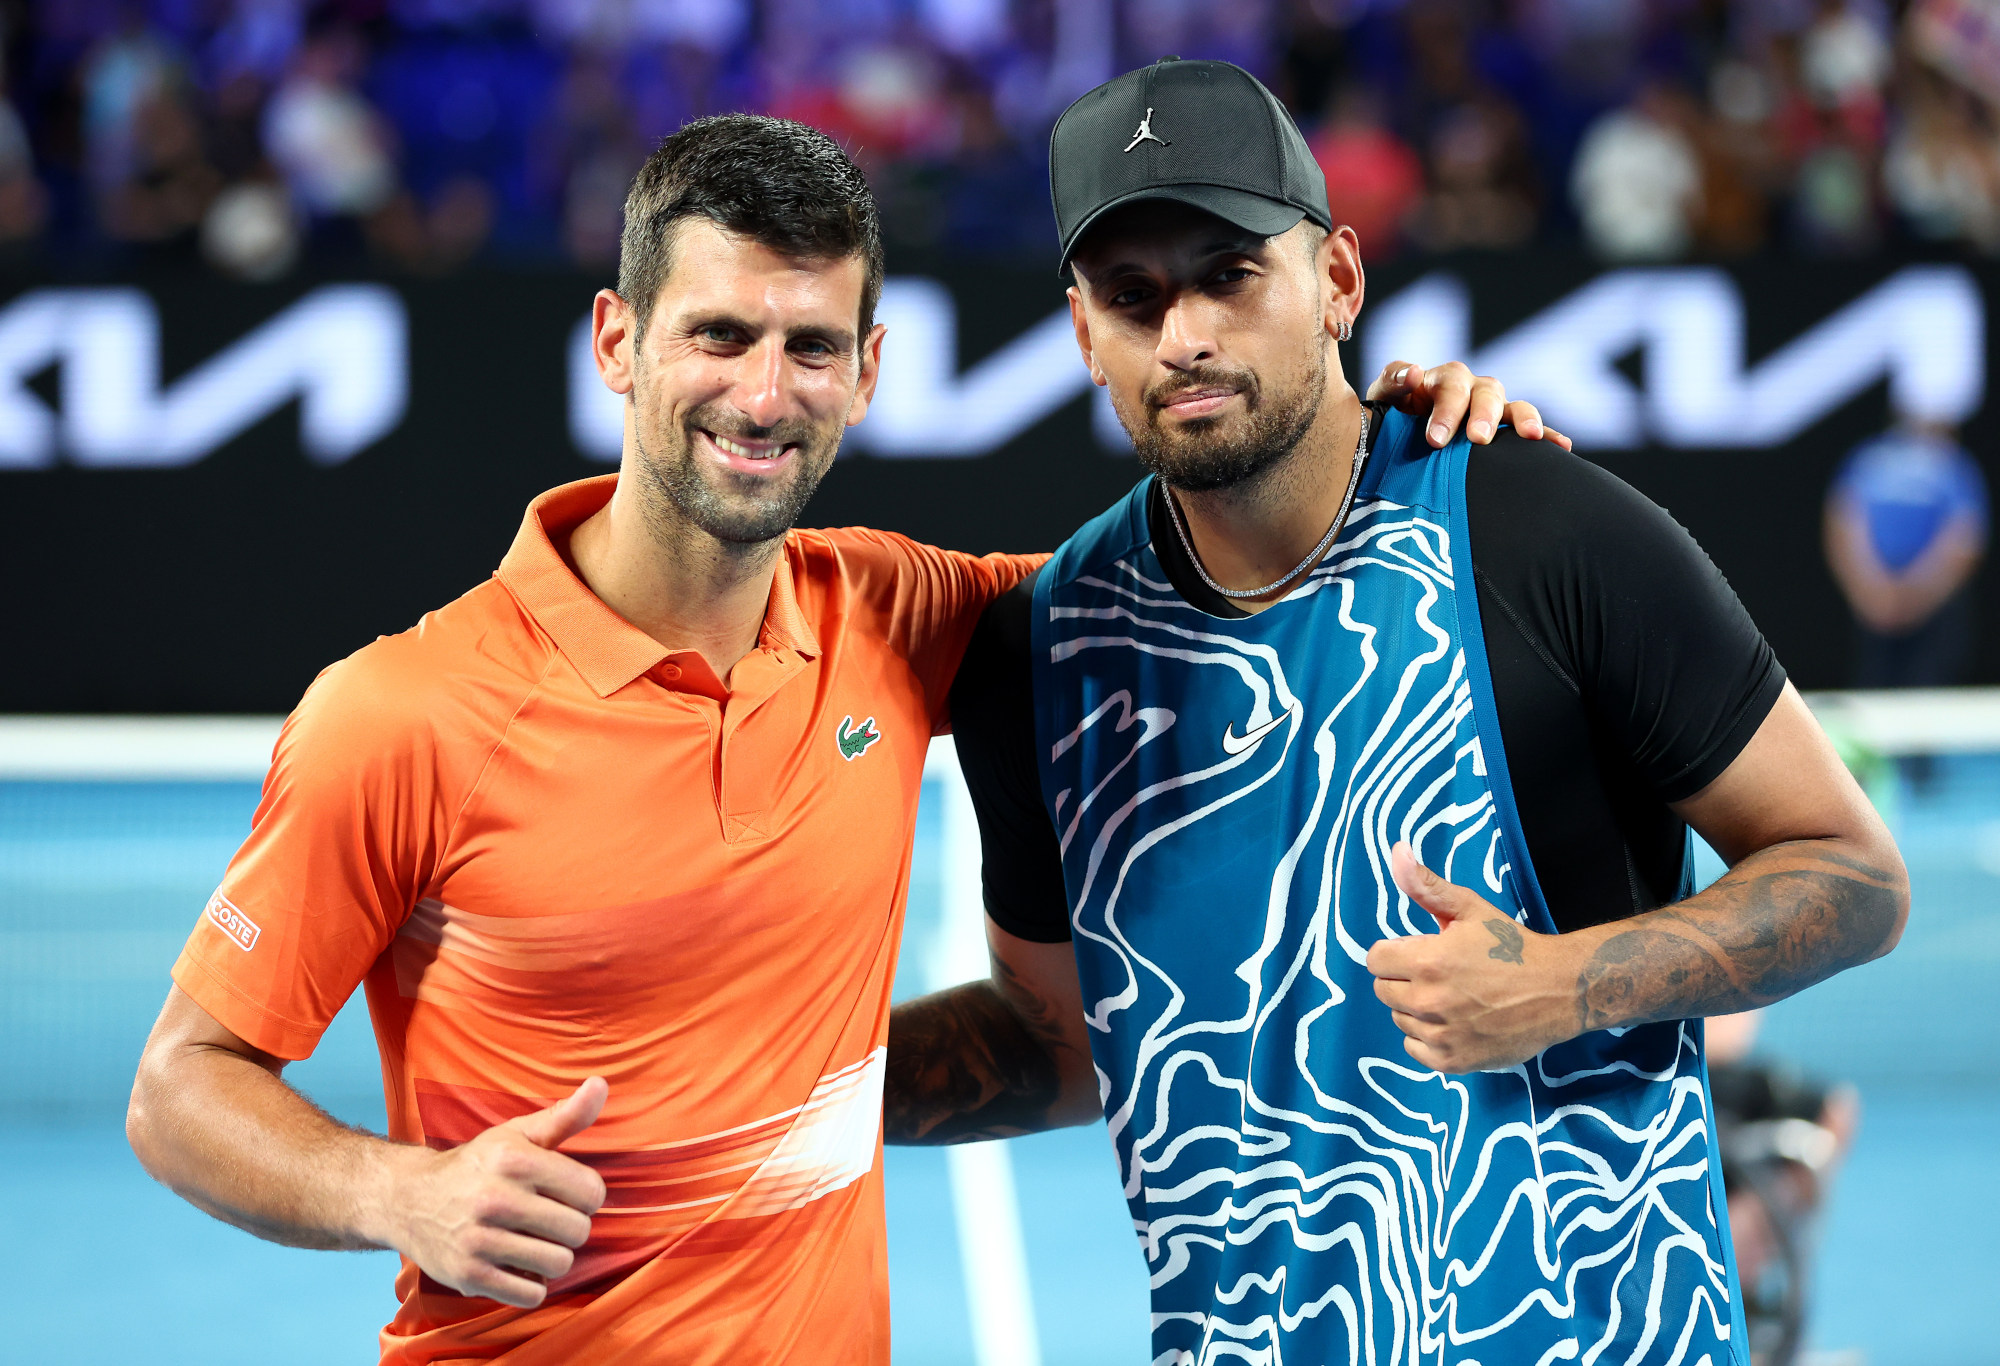 Laga eksibisi membuktikan terlepas dari drama tahun 2022, Novak Djokovic sangat dicintai